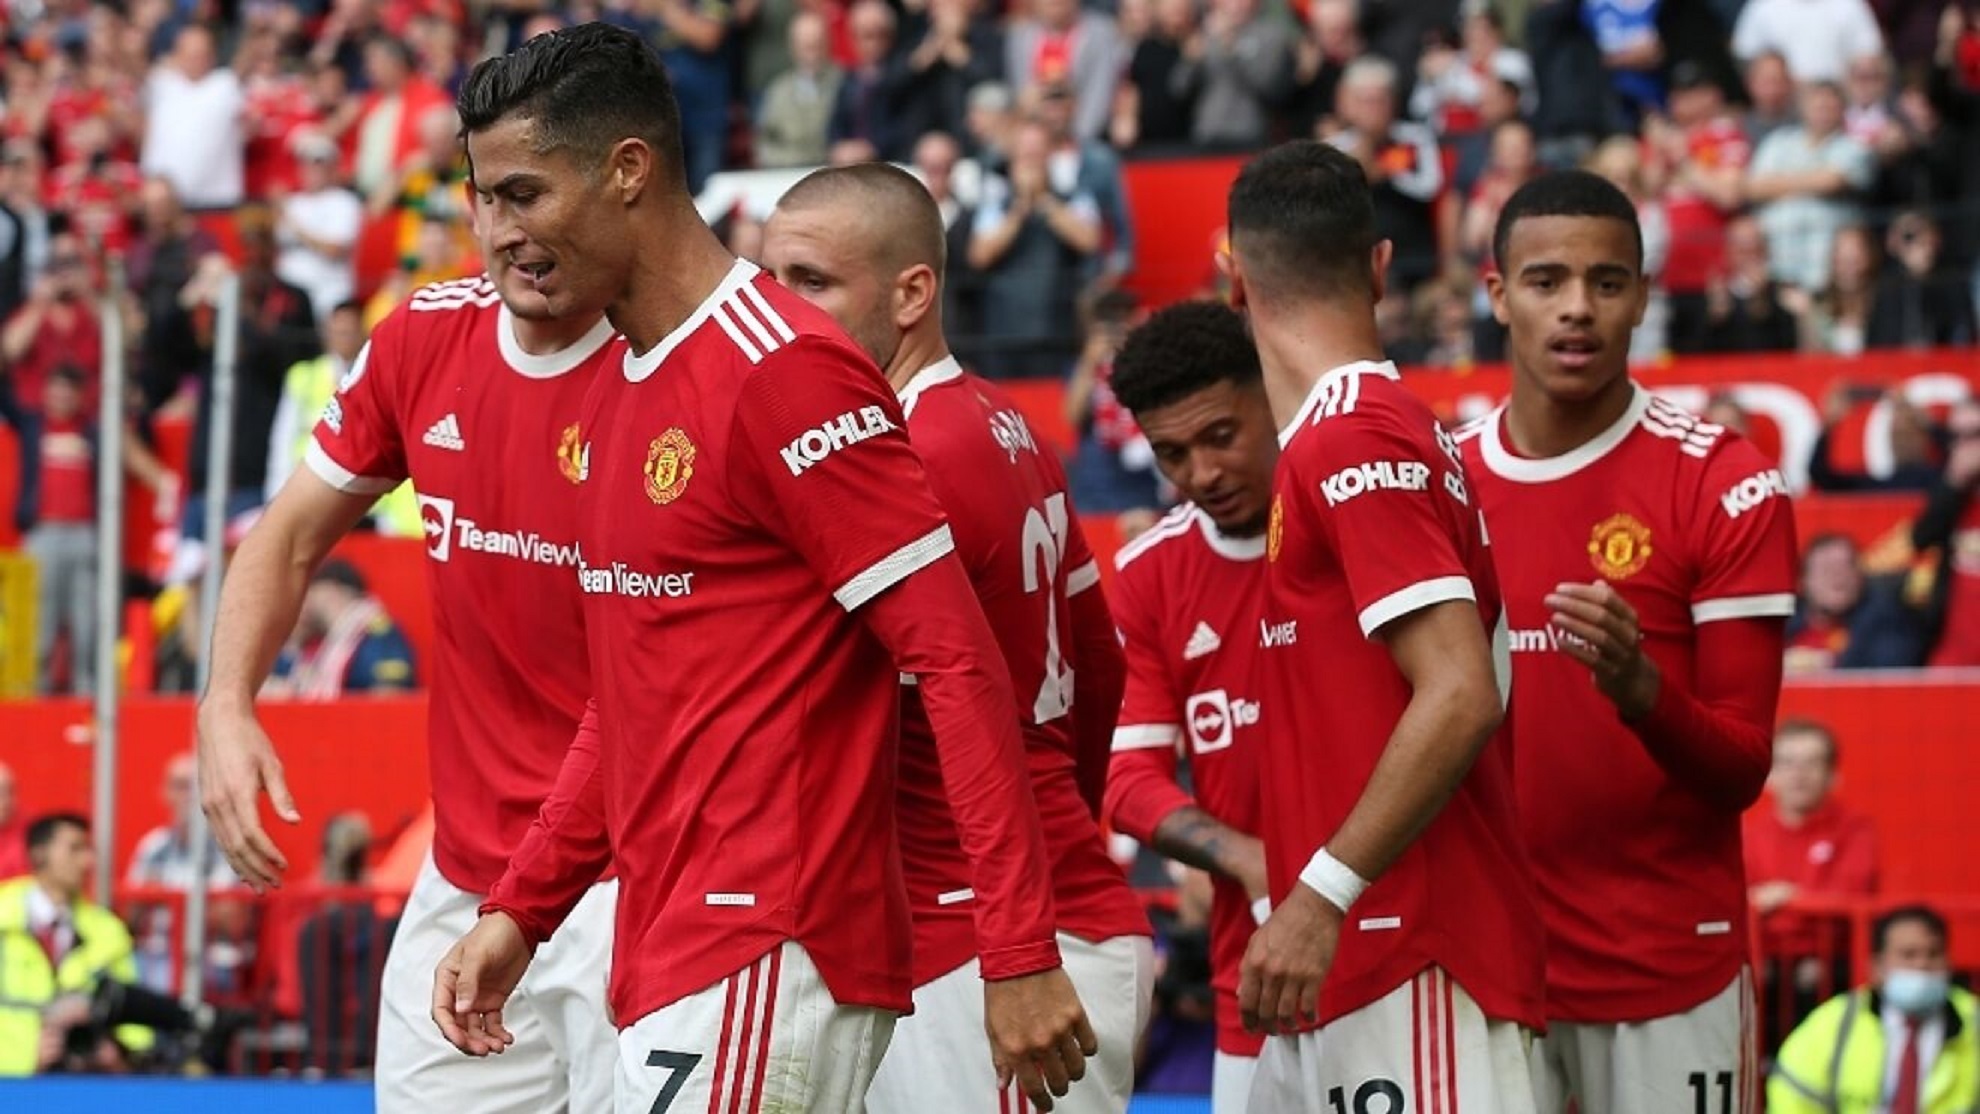 Jugadores del Manchester United celebrando un gol en la Premier League.